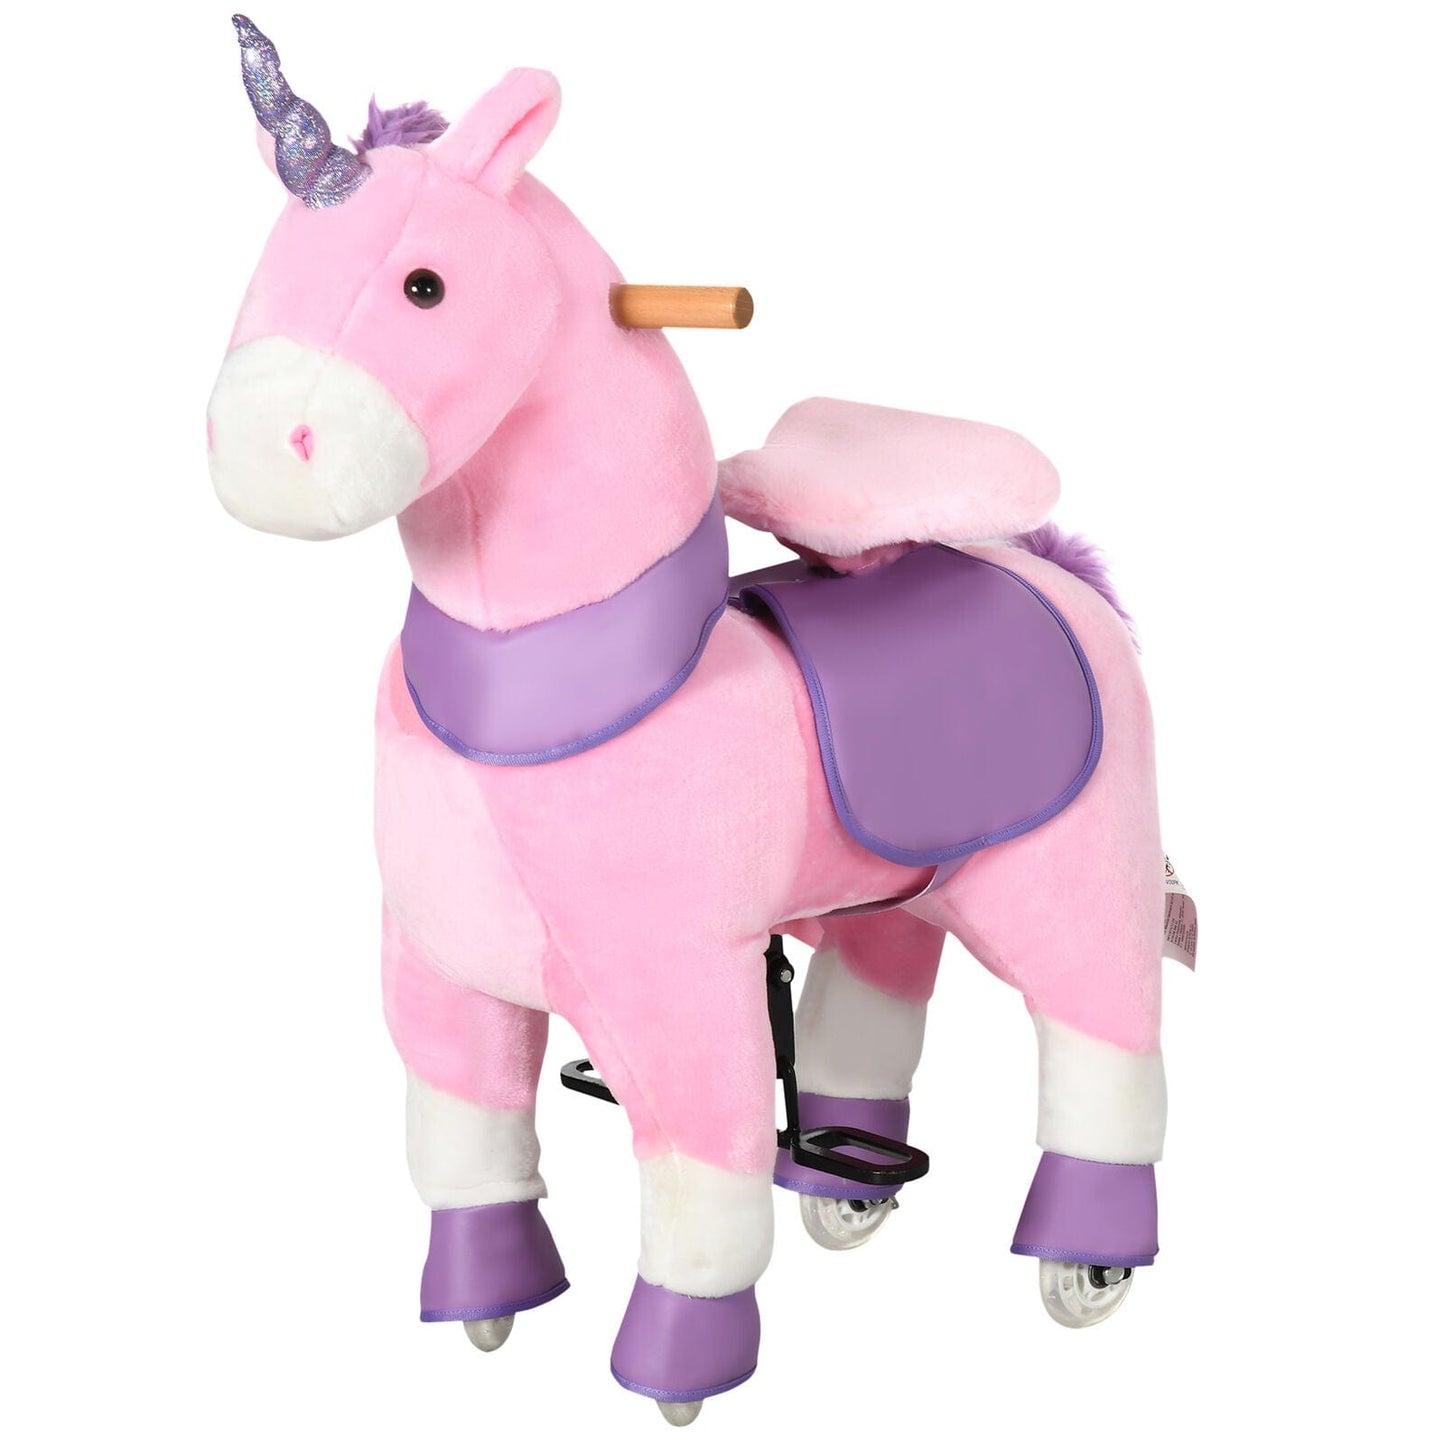 Premium Kids Wheeled Ride On Unicorn Rocking Horse Toy - Merchandise Plug